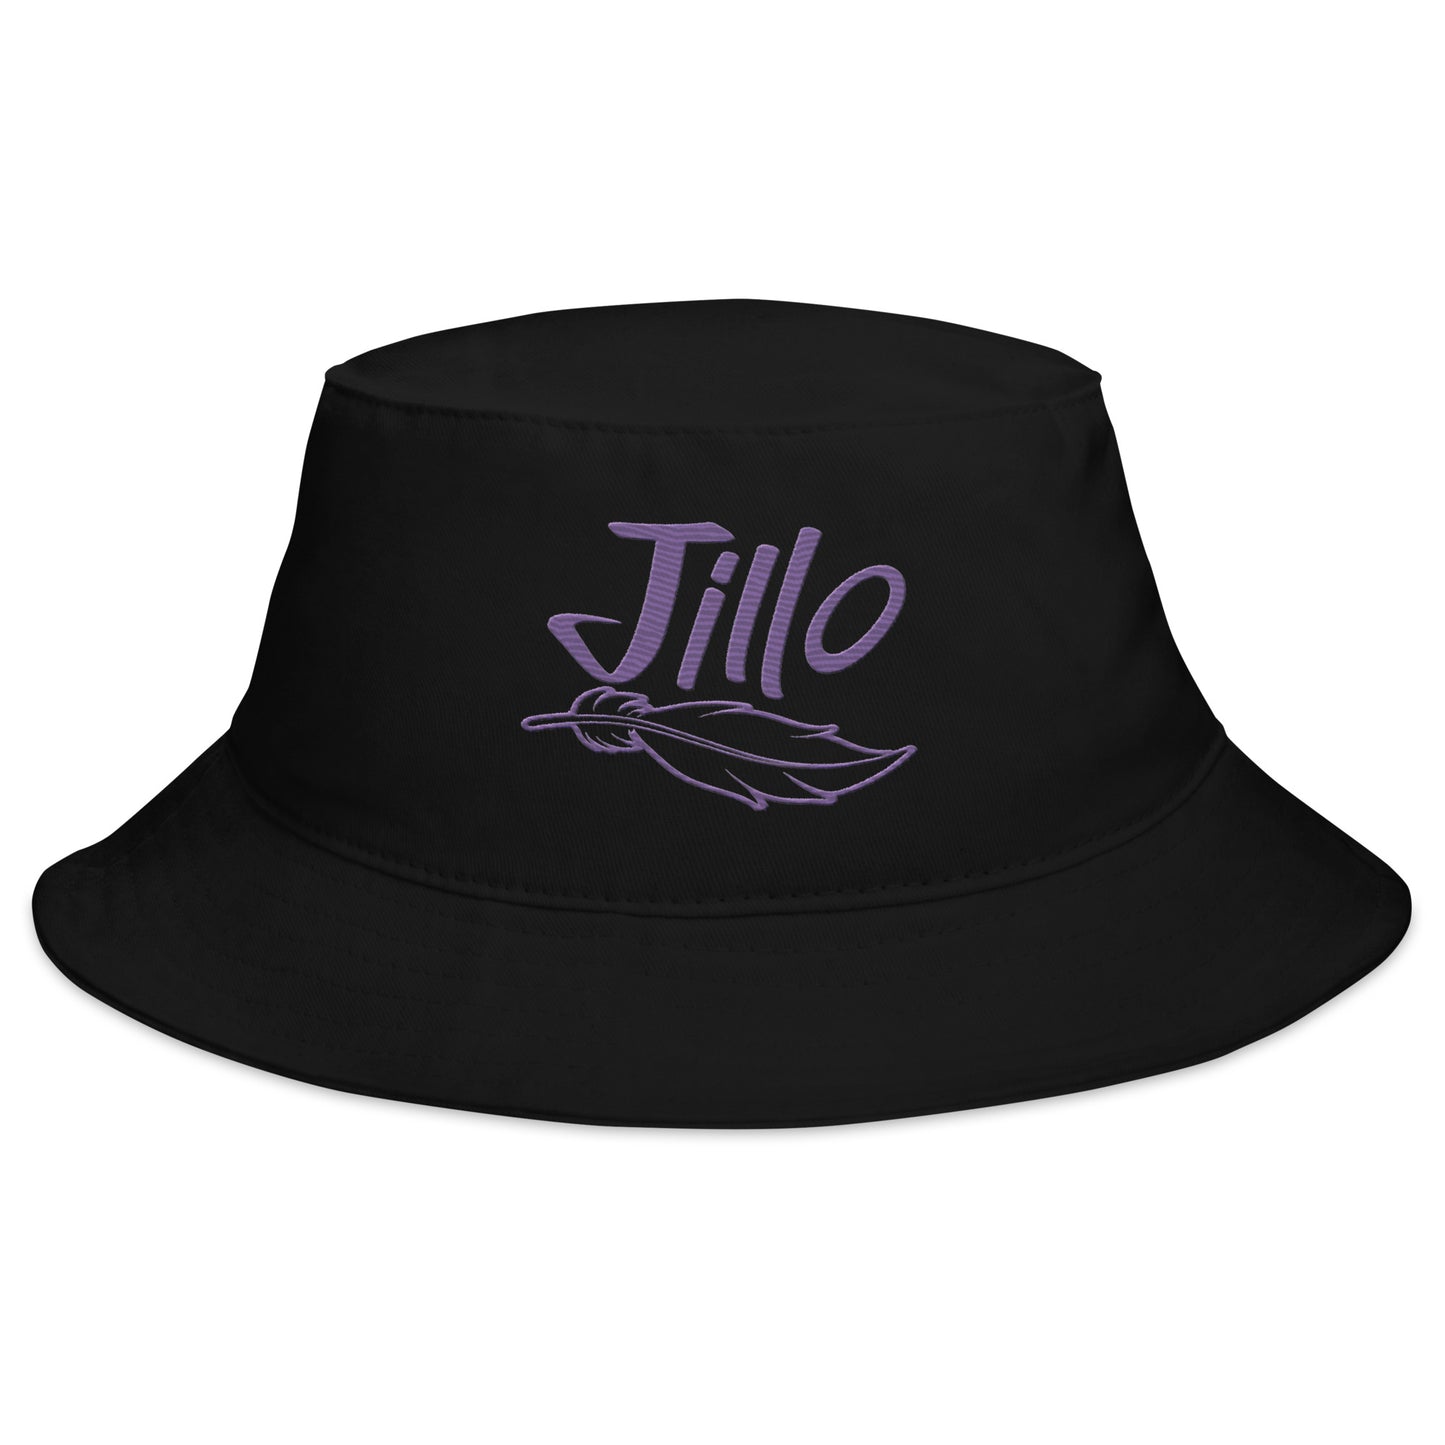 Jillo I Bucket Hat